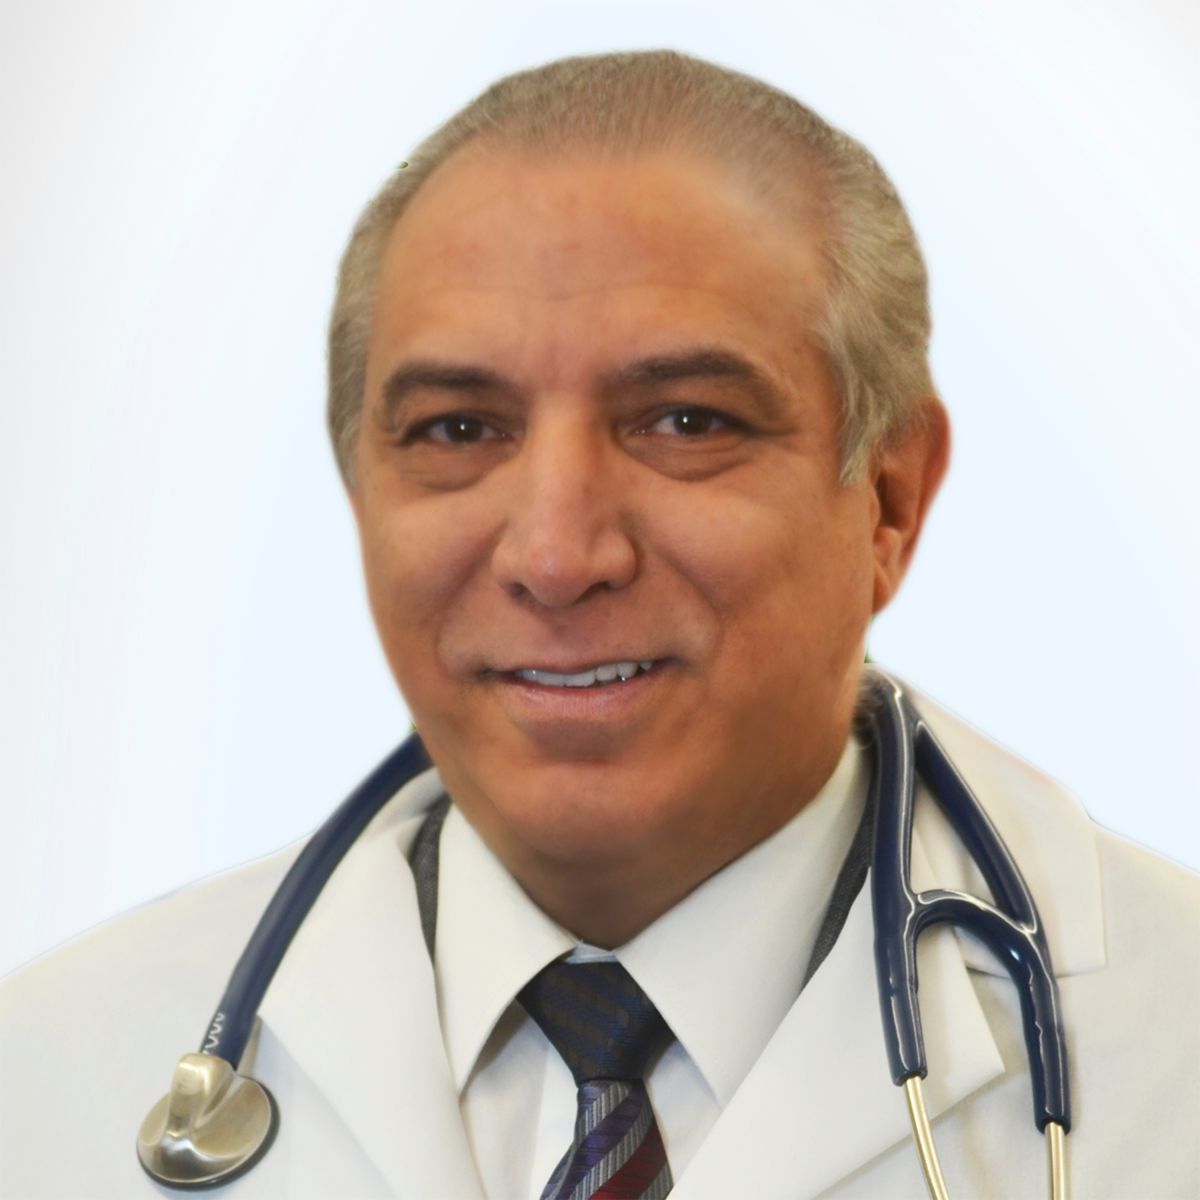 Dr. Ramon Tallaj, presidente de SOMOS.